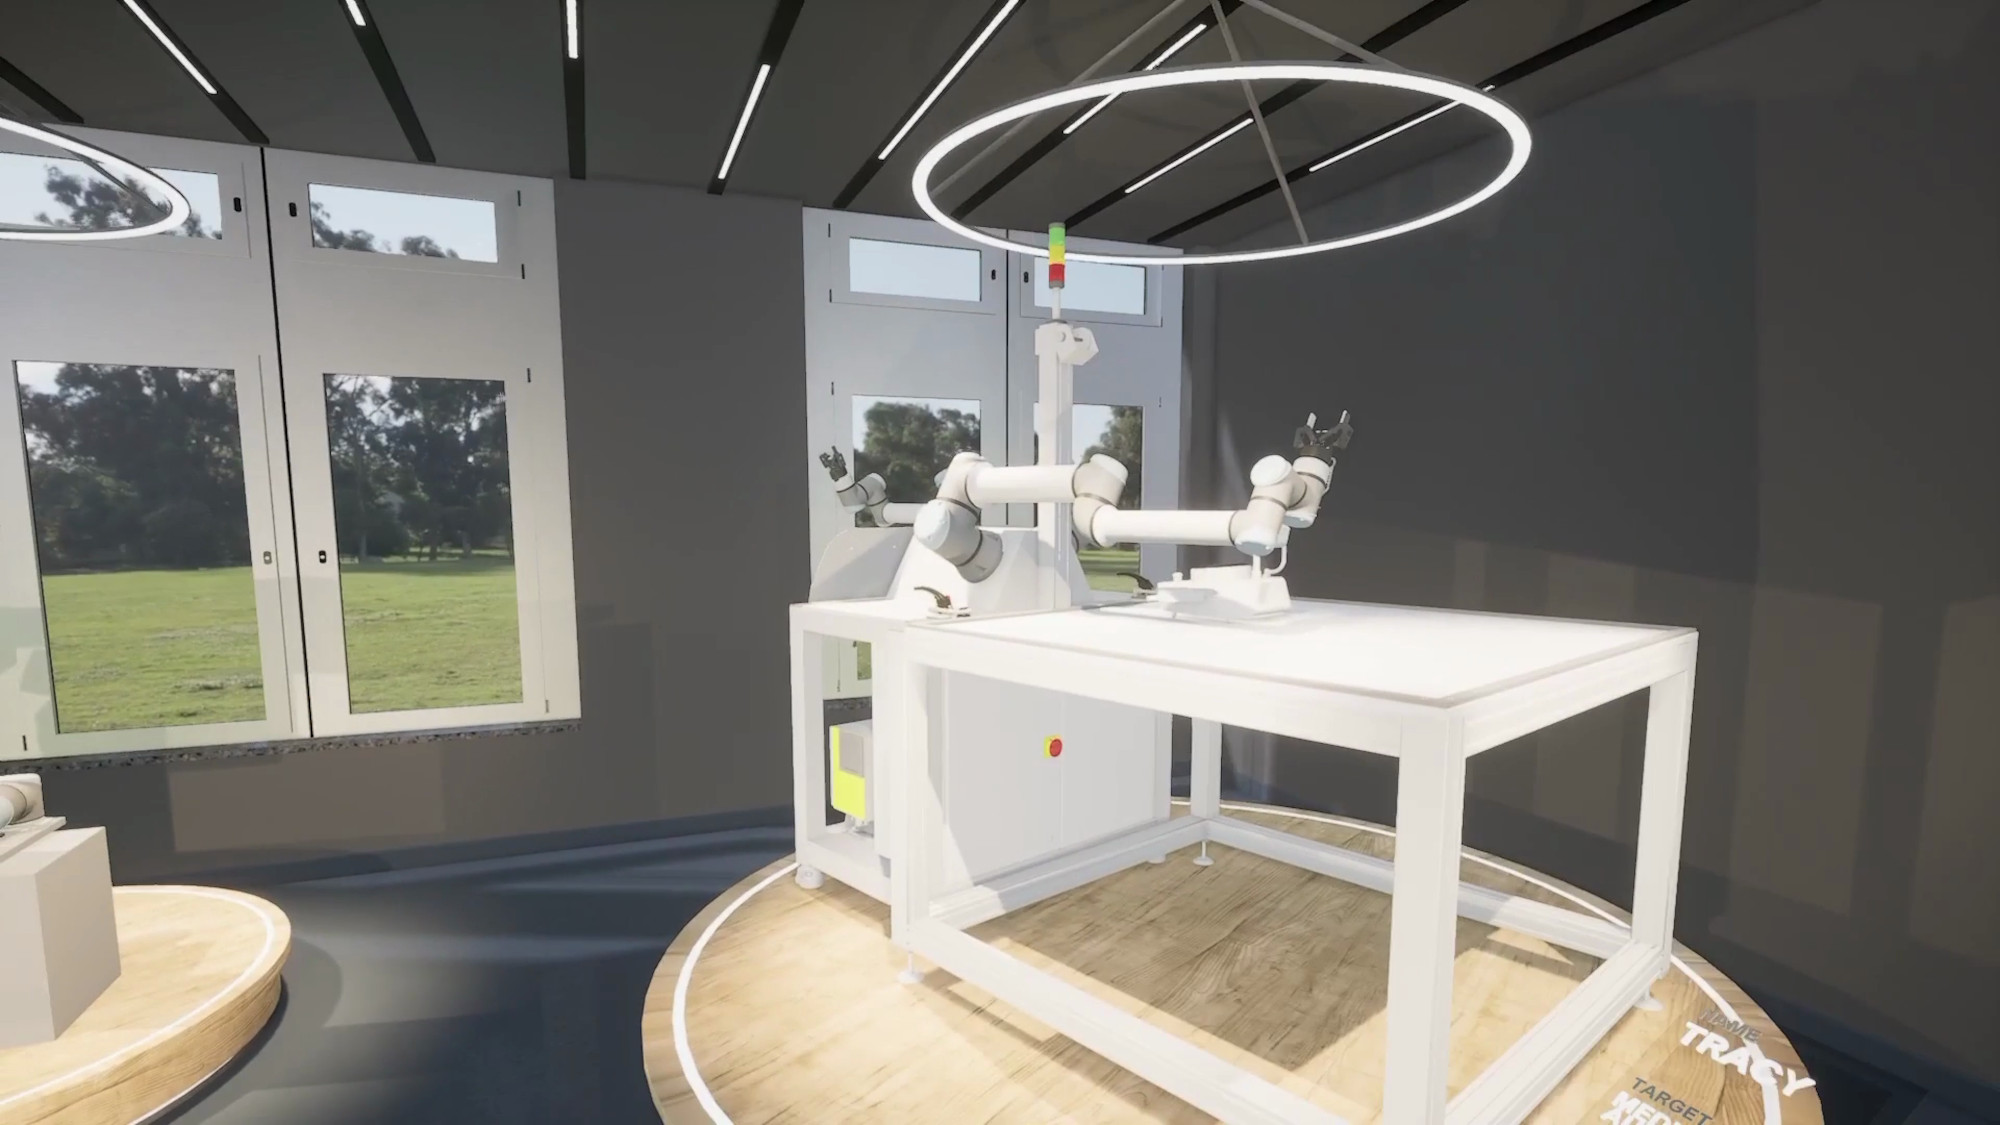 Ein Raum im virtuellen Gebäude, in dem ein Roboter zu sehen ist